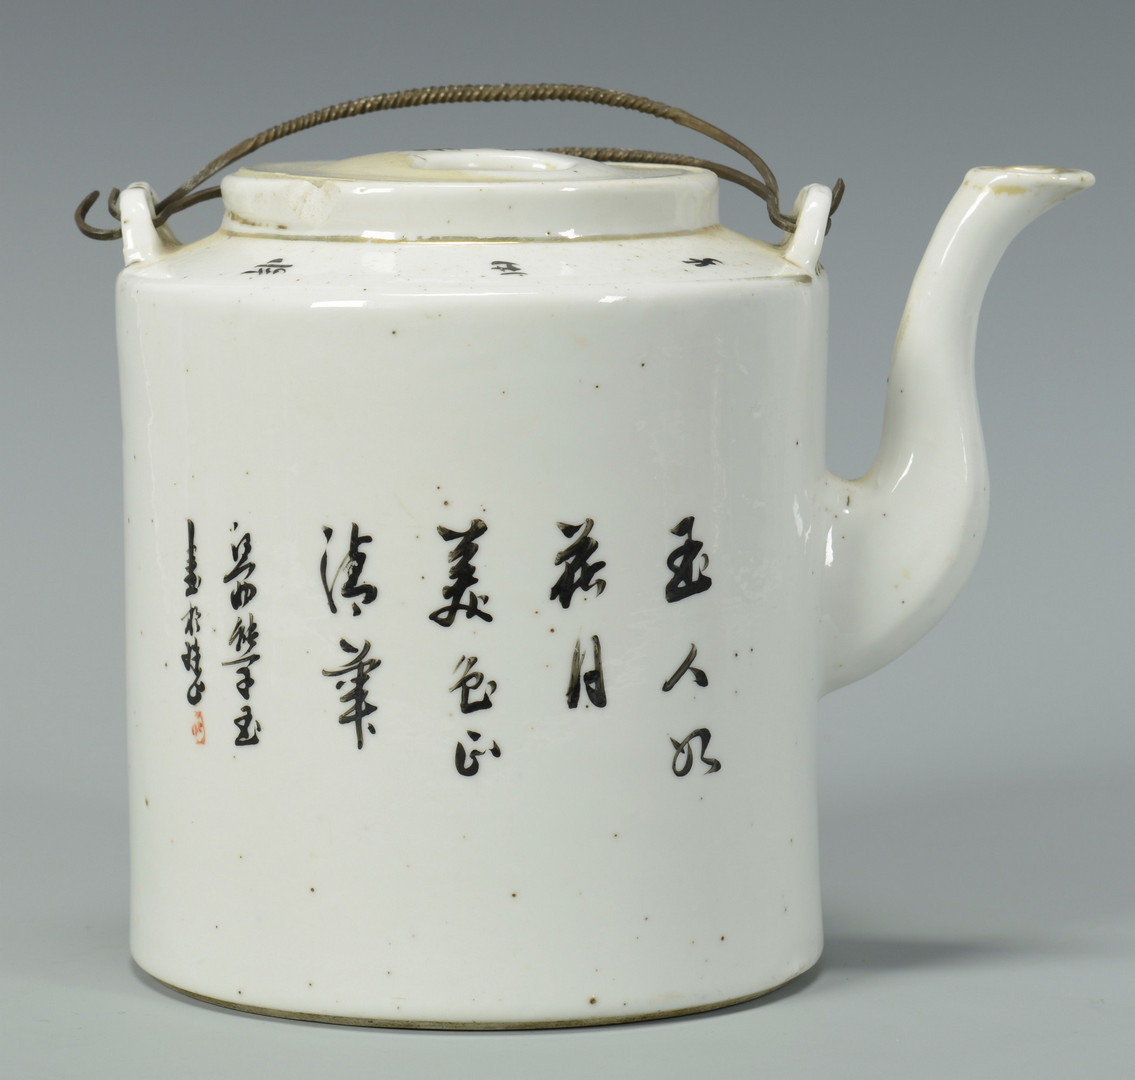 Lot 566: 3 Asian Porcelain Items